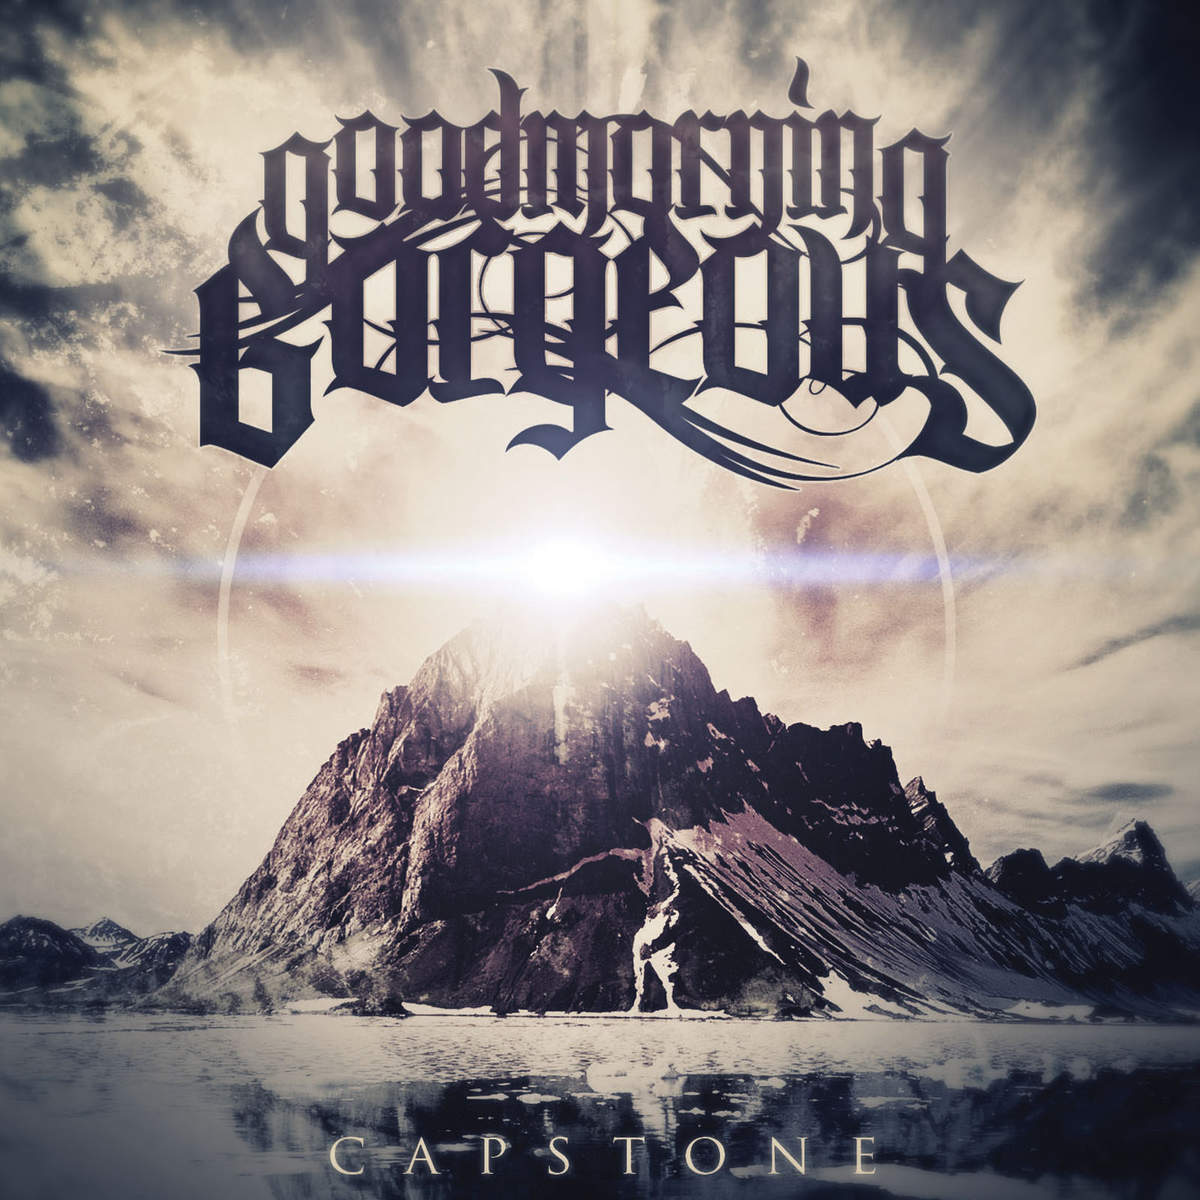 Goodmorning, Gorgeous - Capstone [EP] (2013)